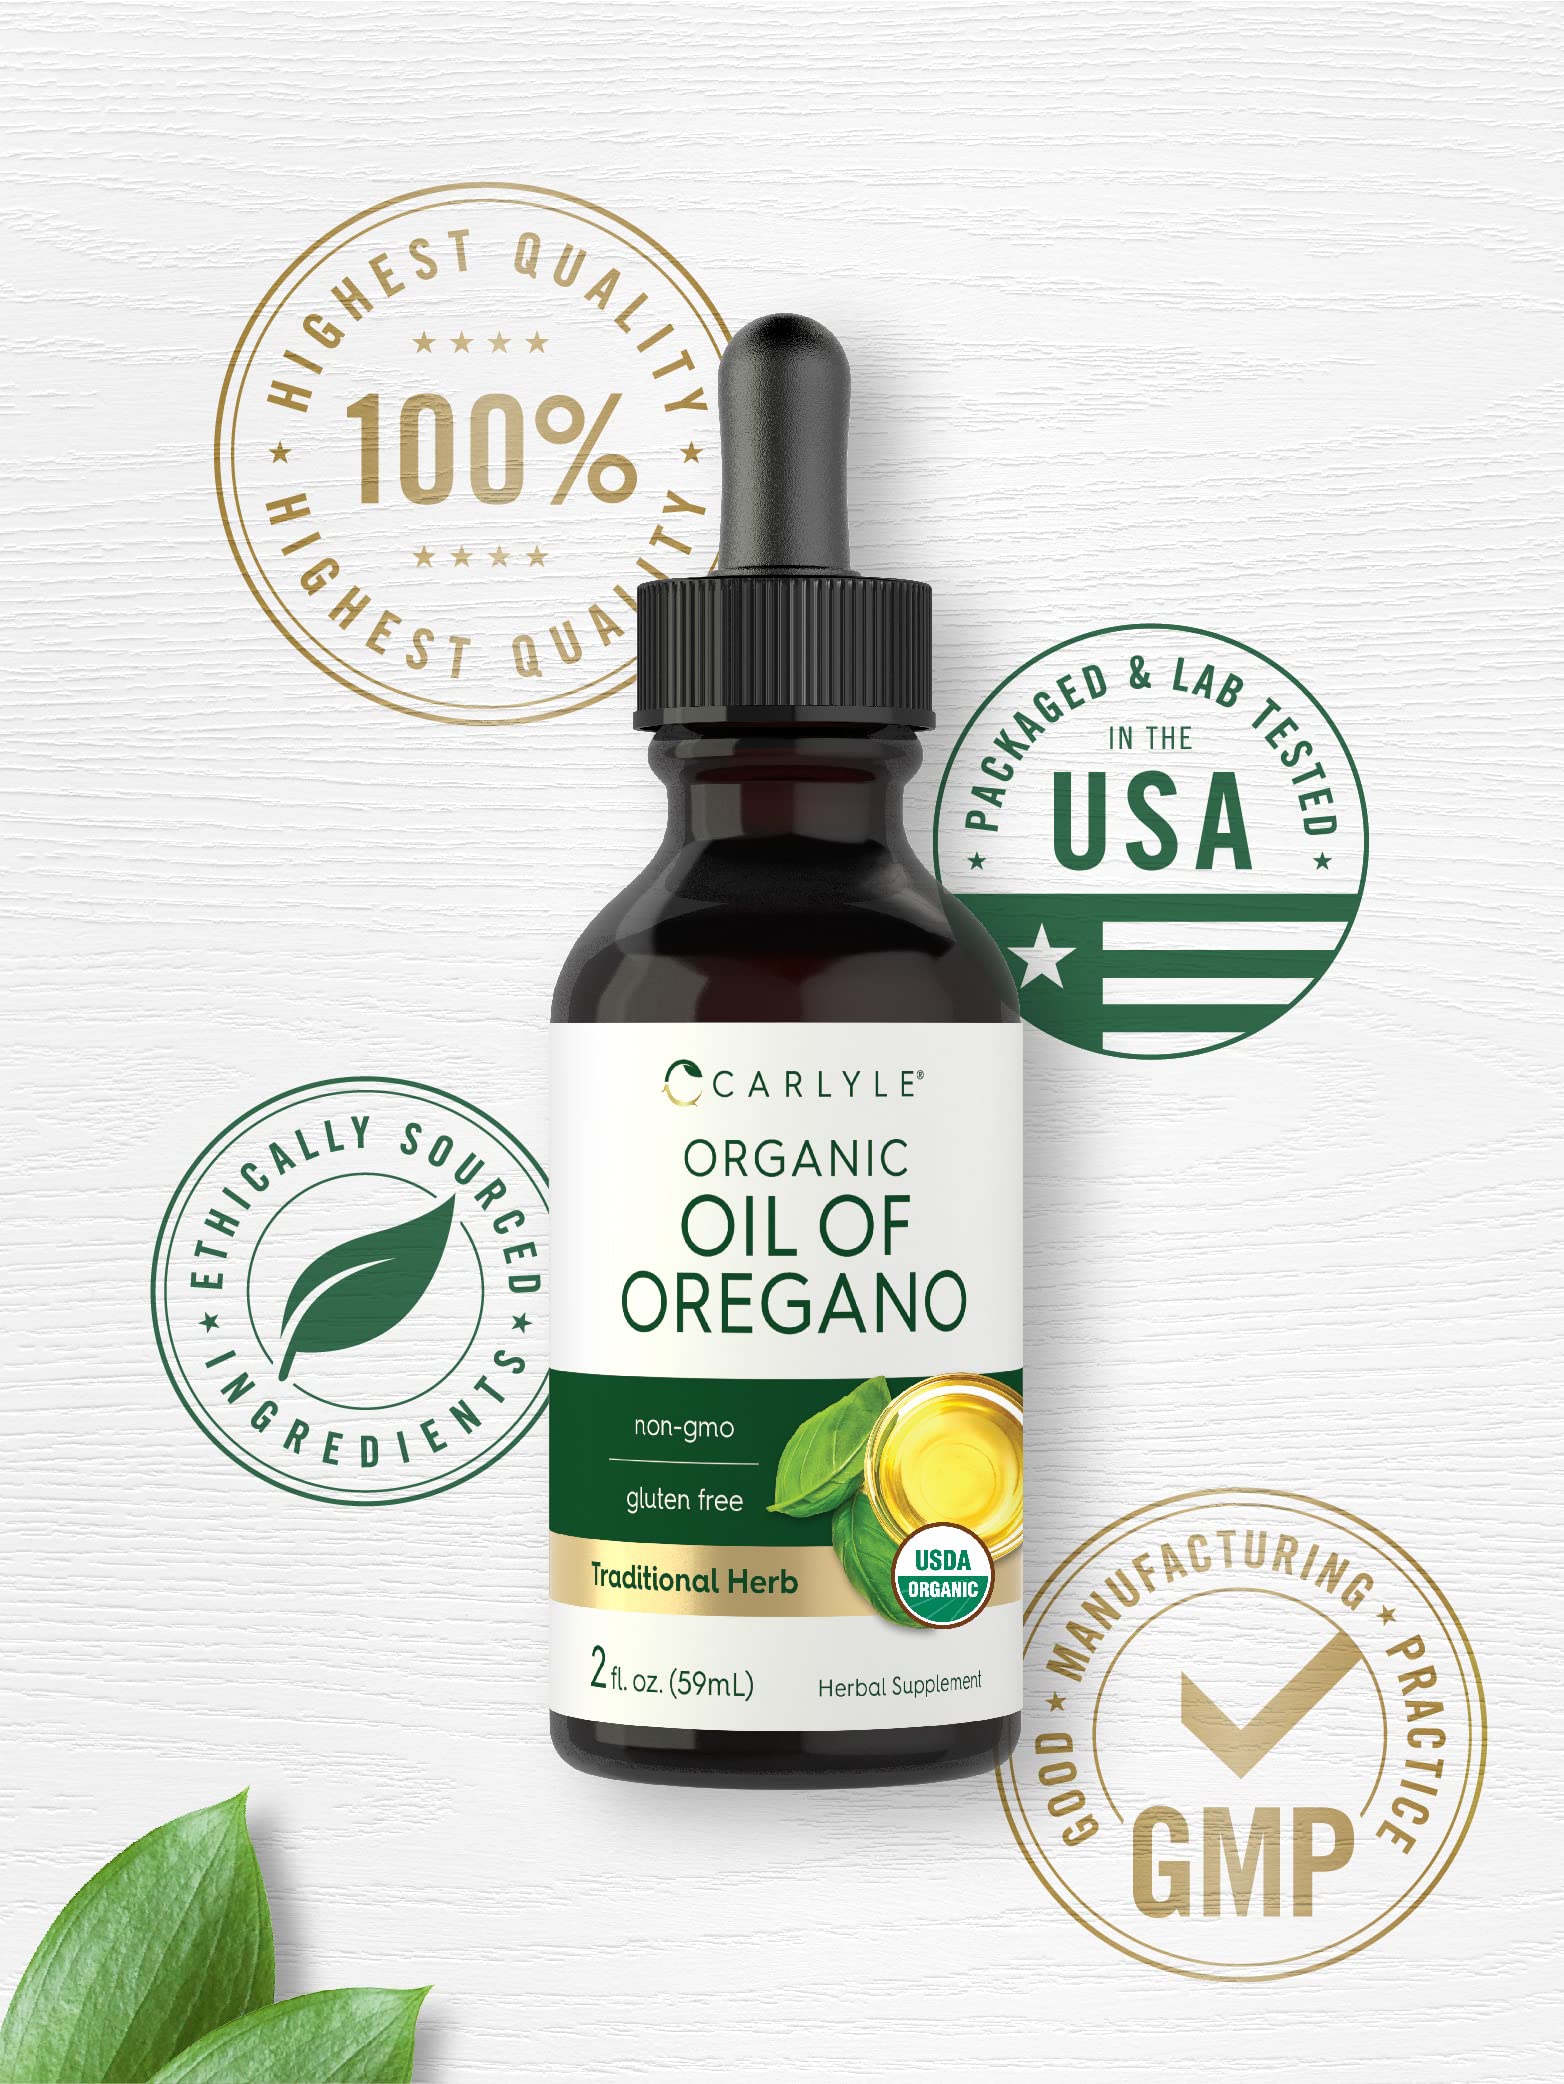 Carlyle Organic Oil of Oregano | 2 fl oz Liquid | Vegan, USDA Certified | Non-GMO, Gluten Free Drops